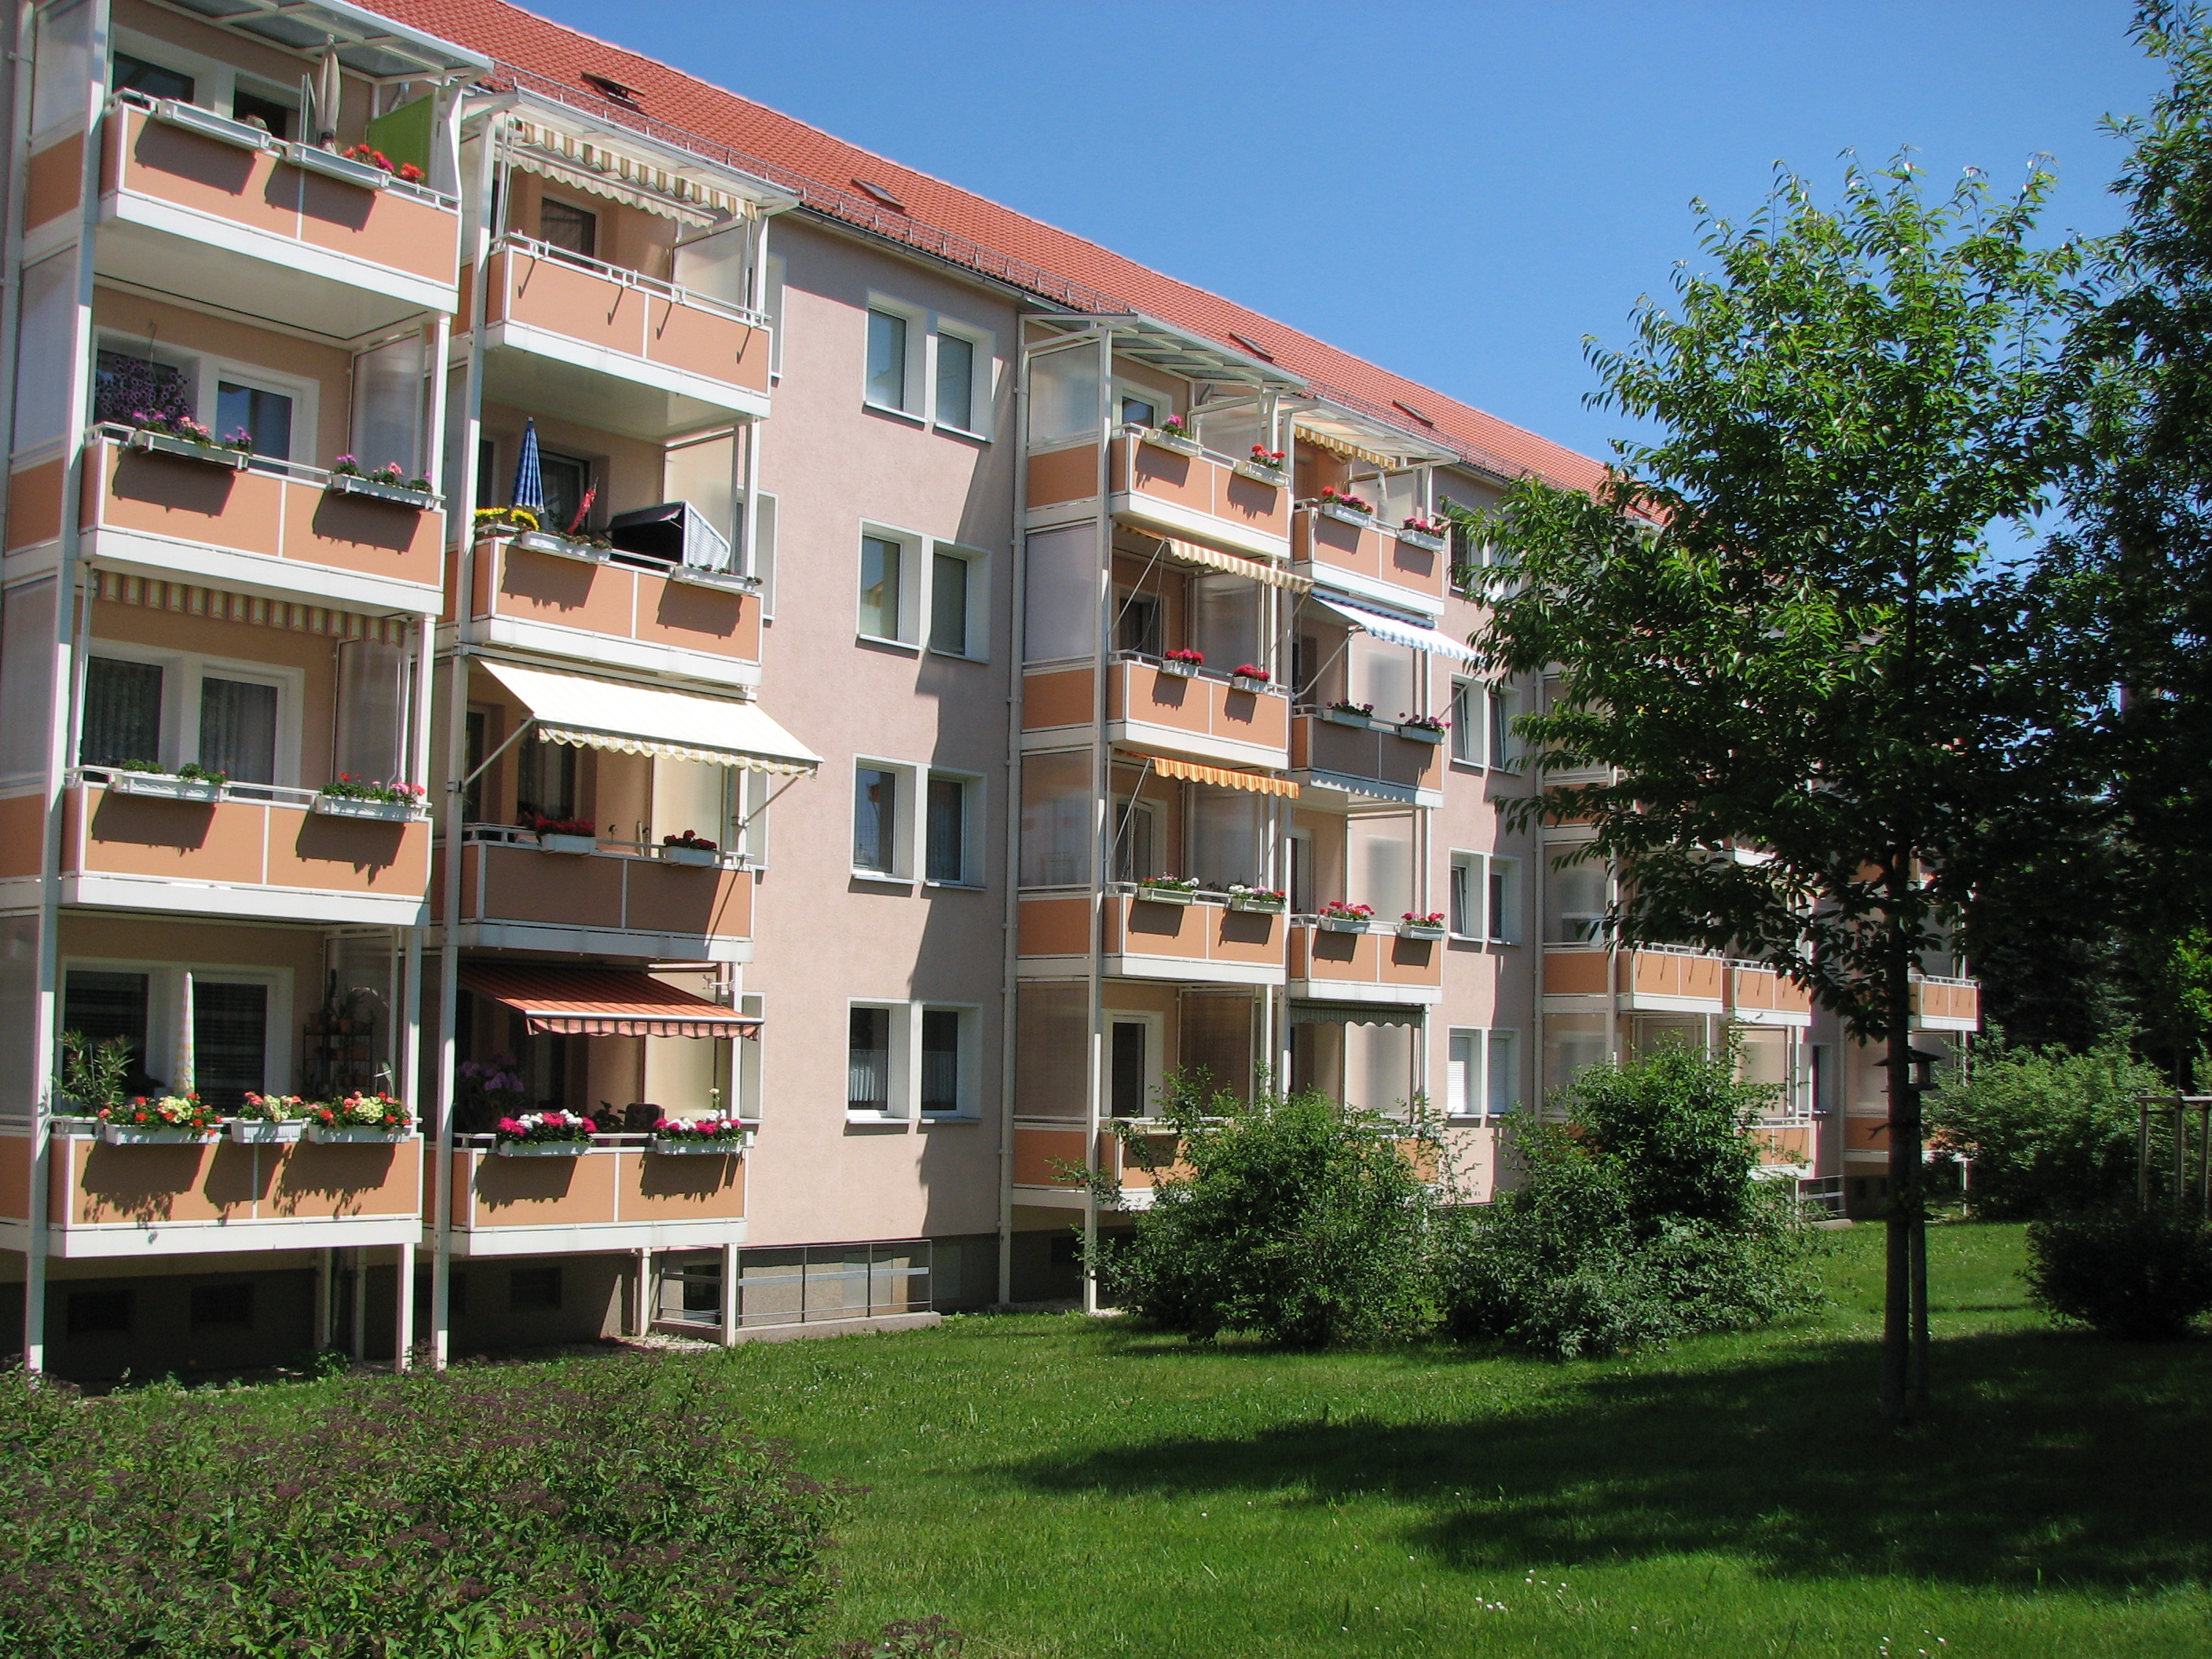 Wohnhaus mit Wohnungen zur Vermietung der Wohnungsgenossenschaft Lichtenstein/Sachsen